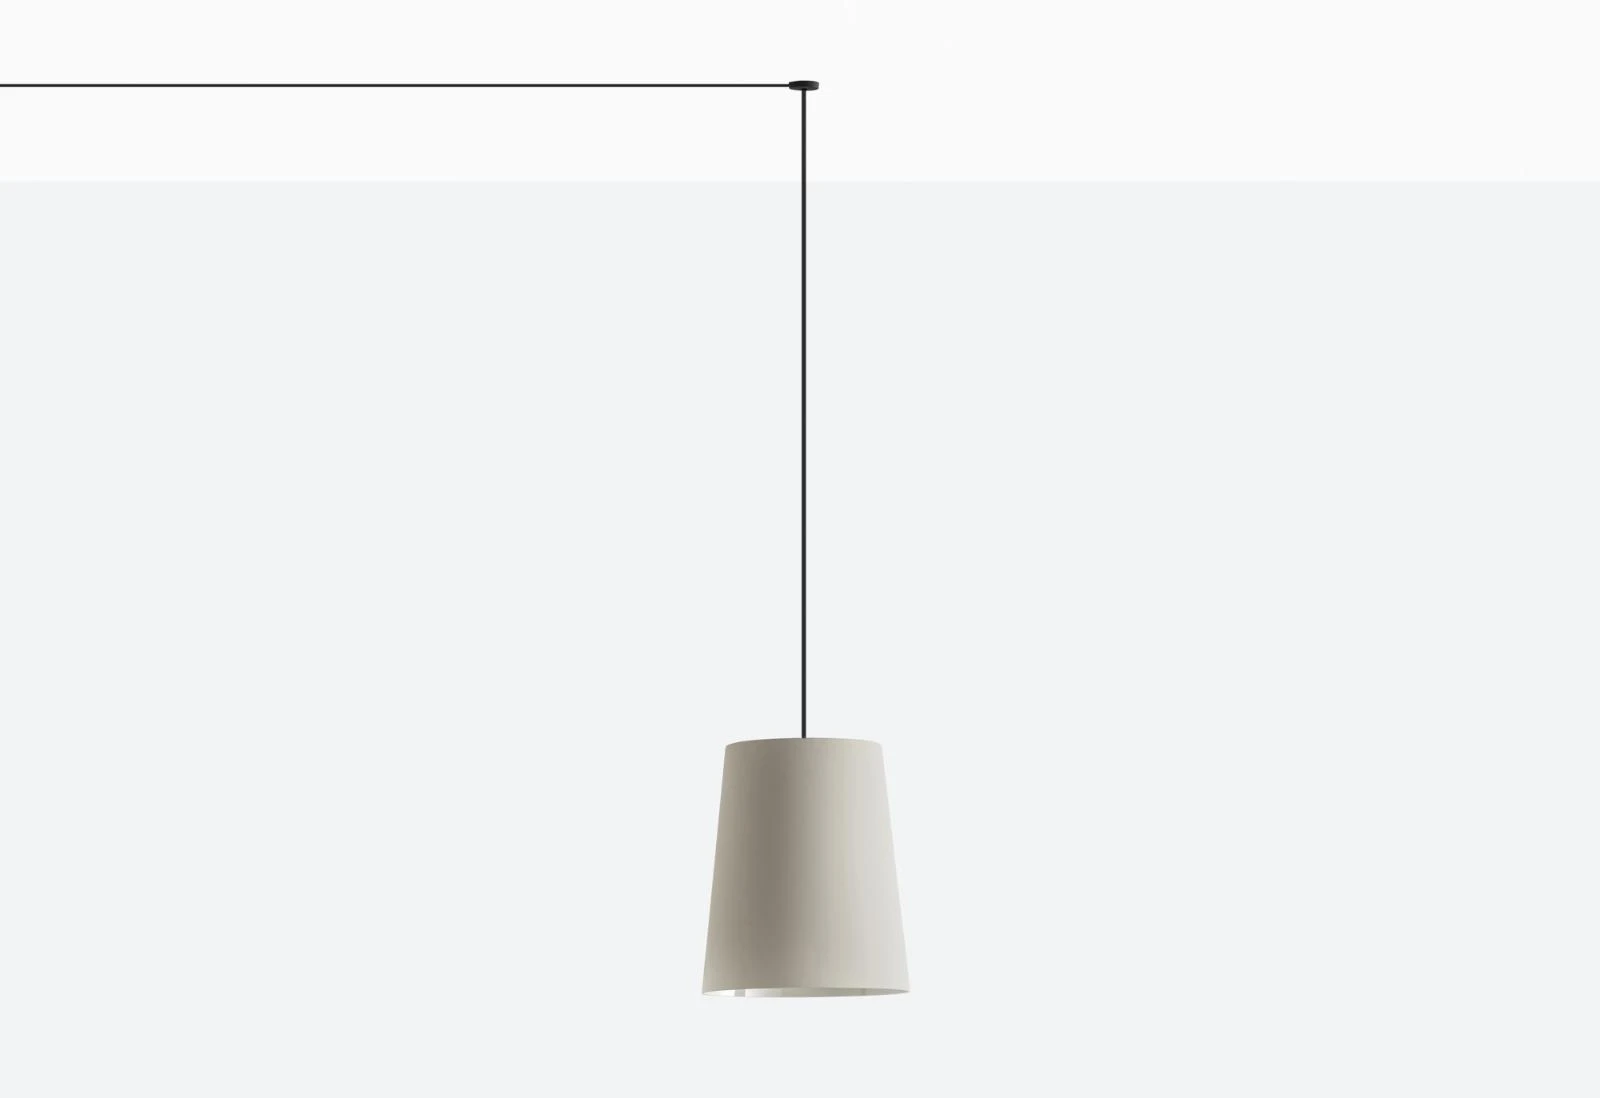 Hängelampe L001CW/A - Design Lampe von Pedrali FU - rauchgrau transparent 8,0 Meter + 5 Kabelklemmen